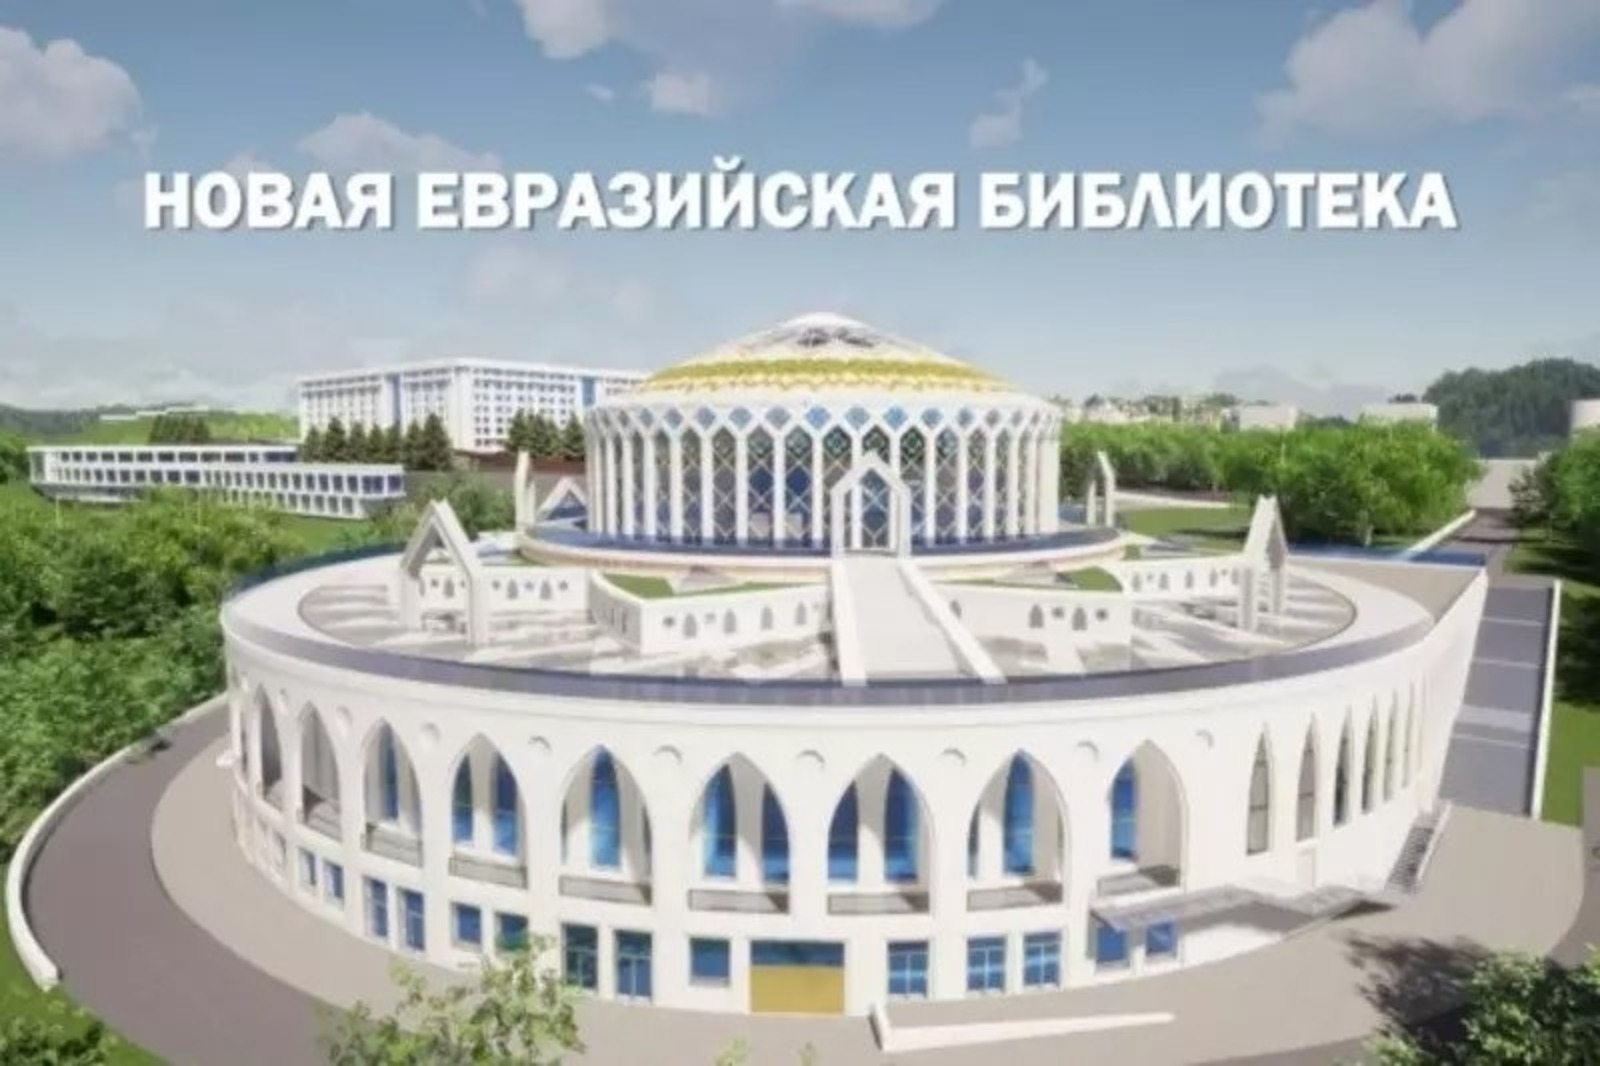 Архитекторы Башкирии предложили помощь в проектировании Евразийской библиотеки